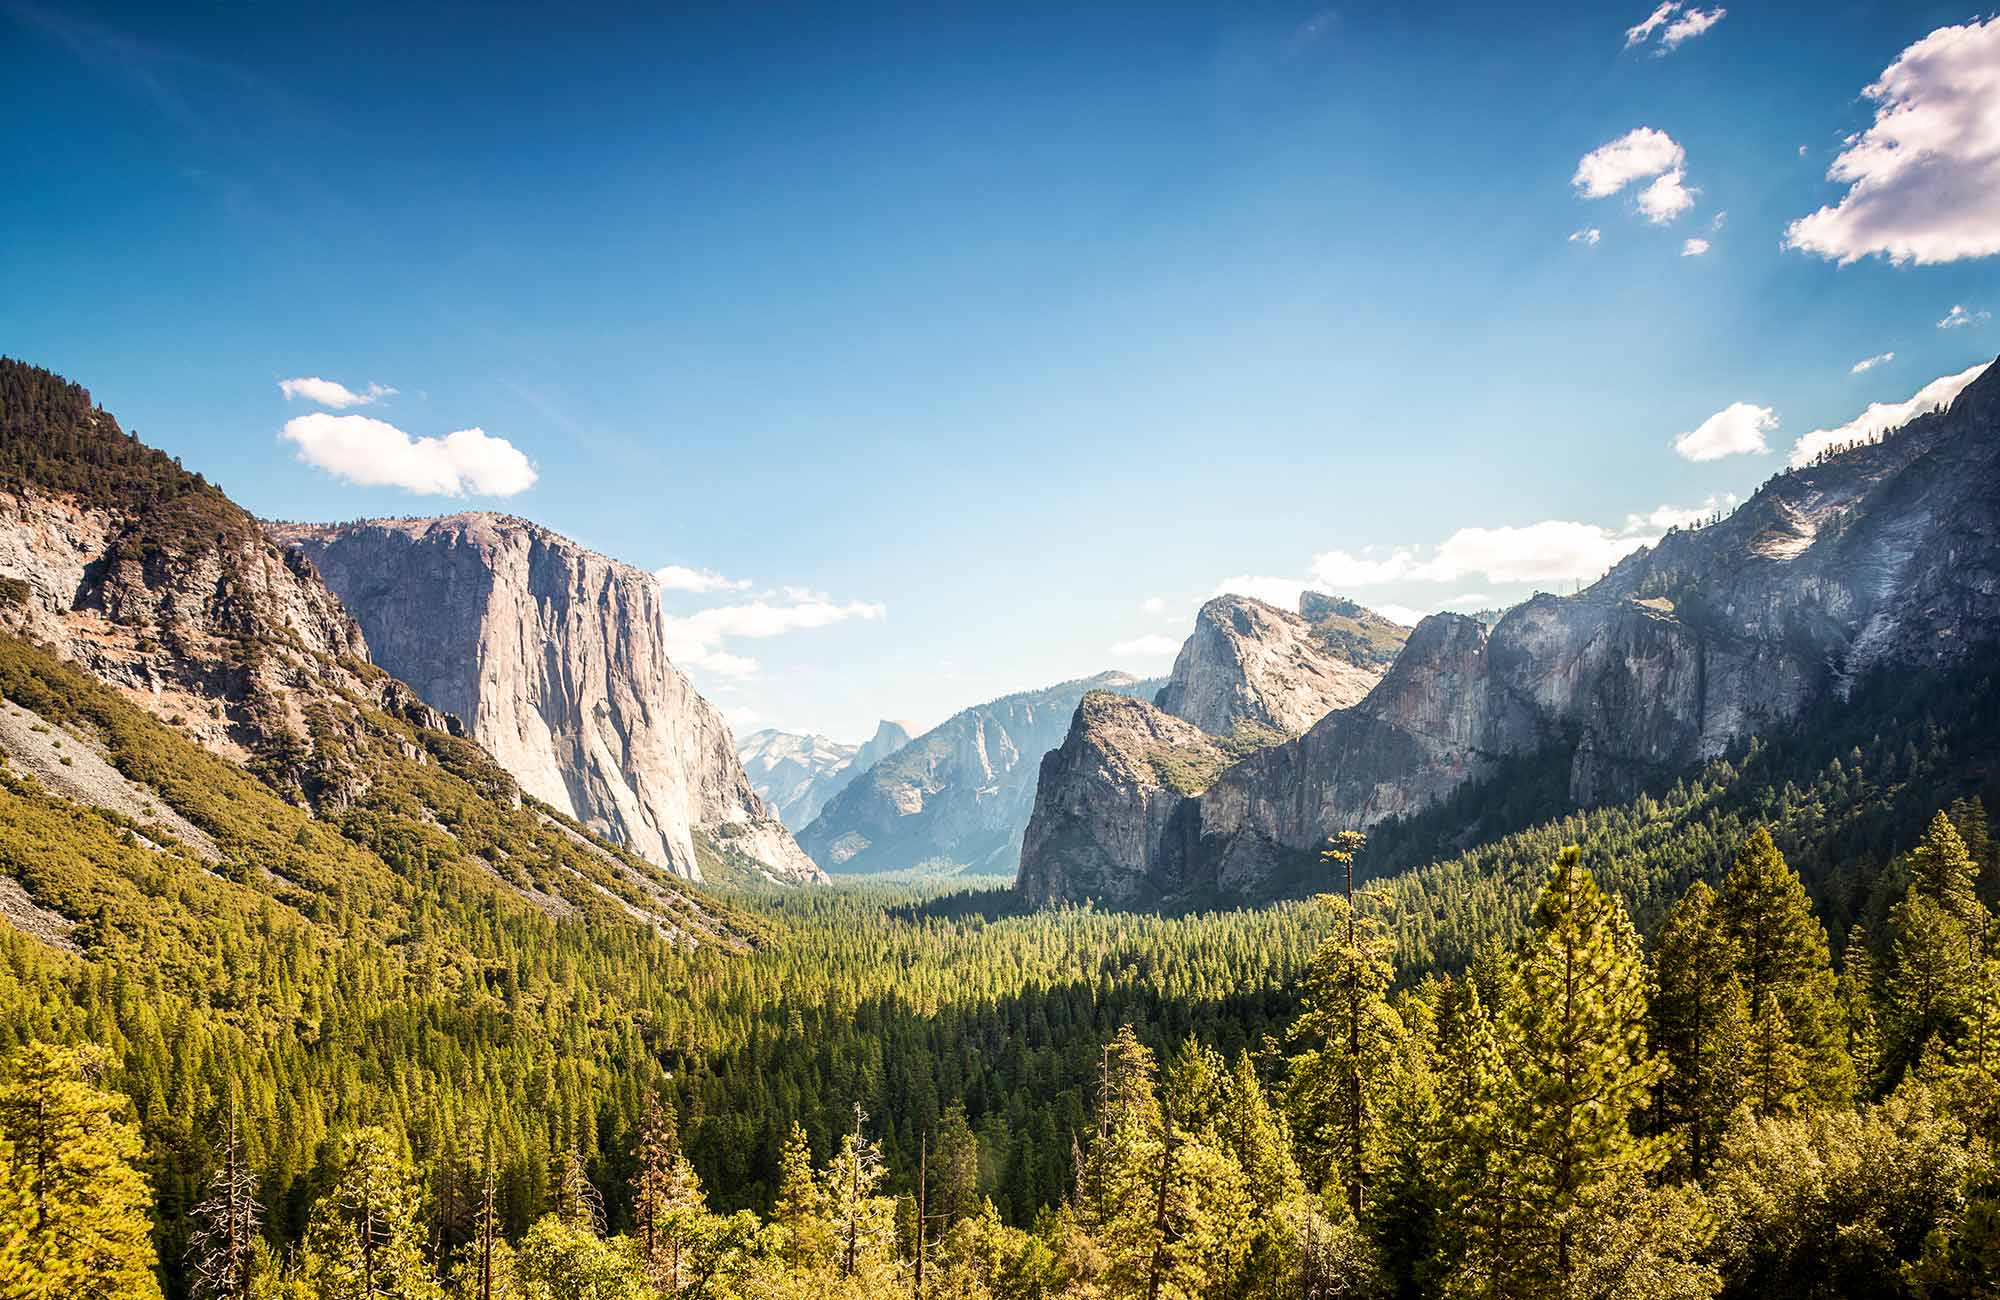 Parhaat kuvat matkalta - Yosemiten kansallispuisto - KILROY